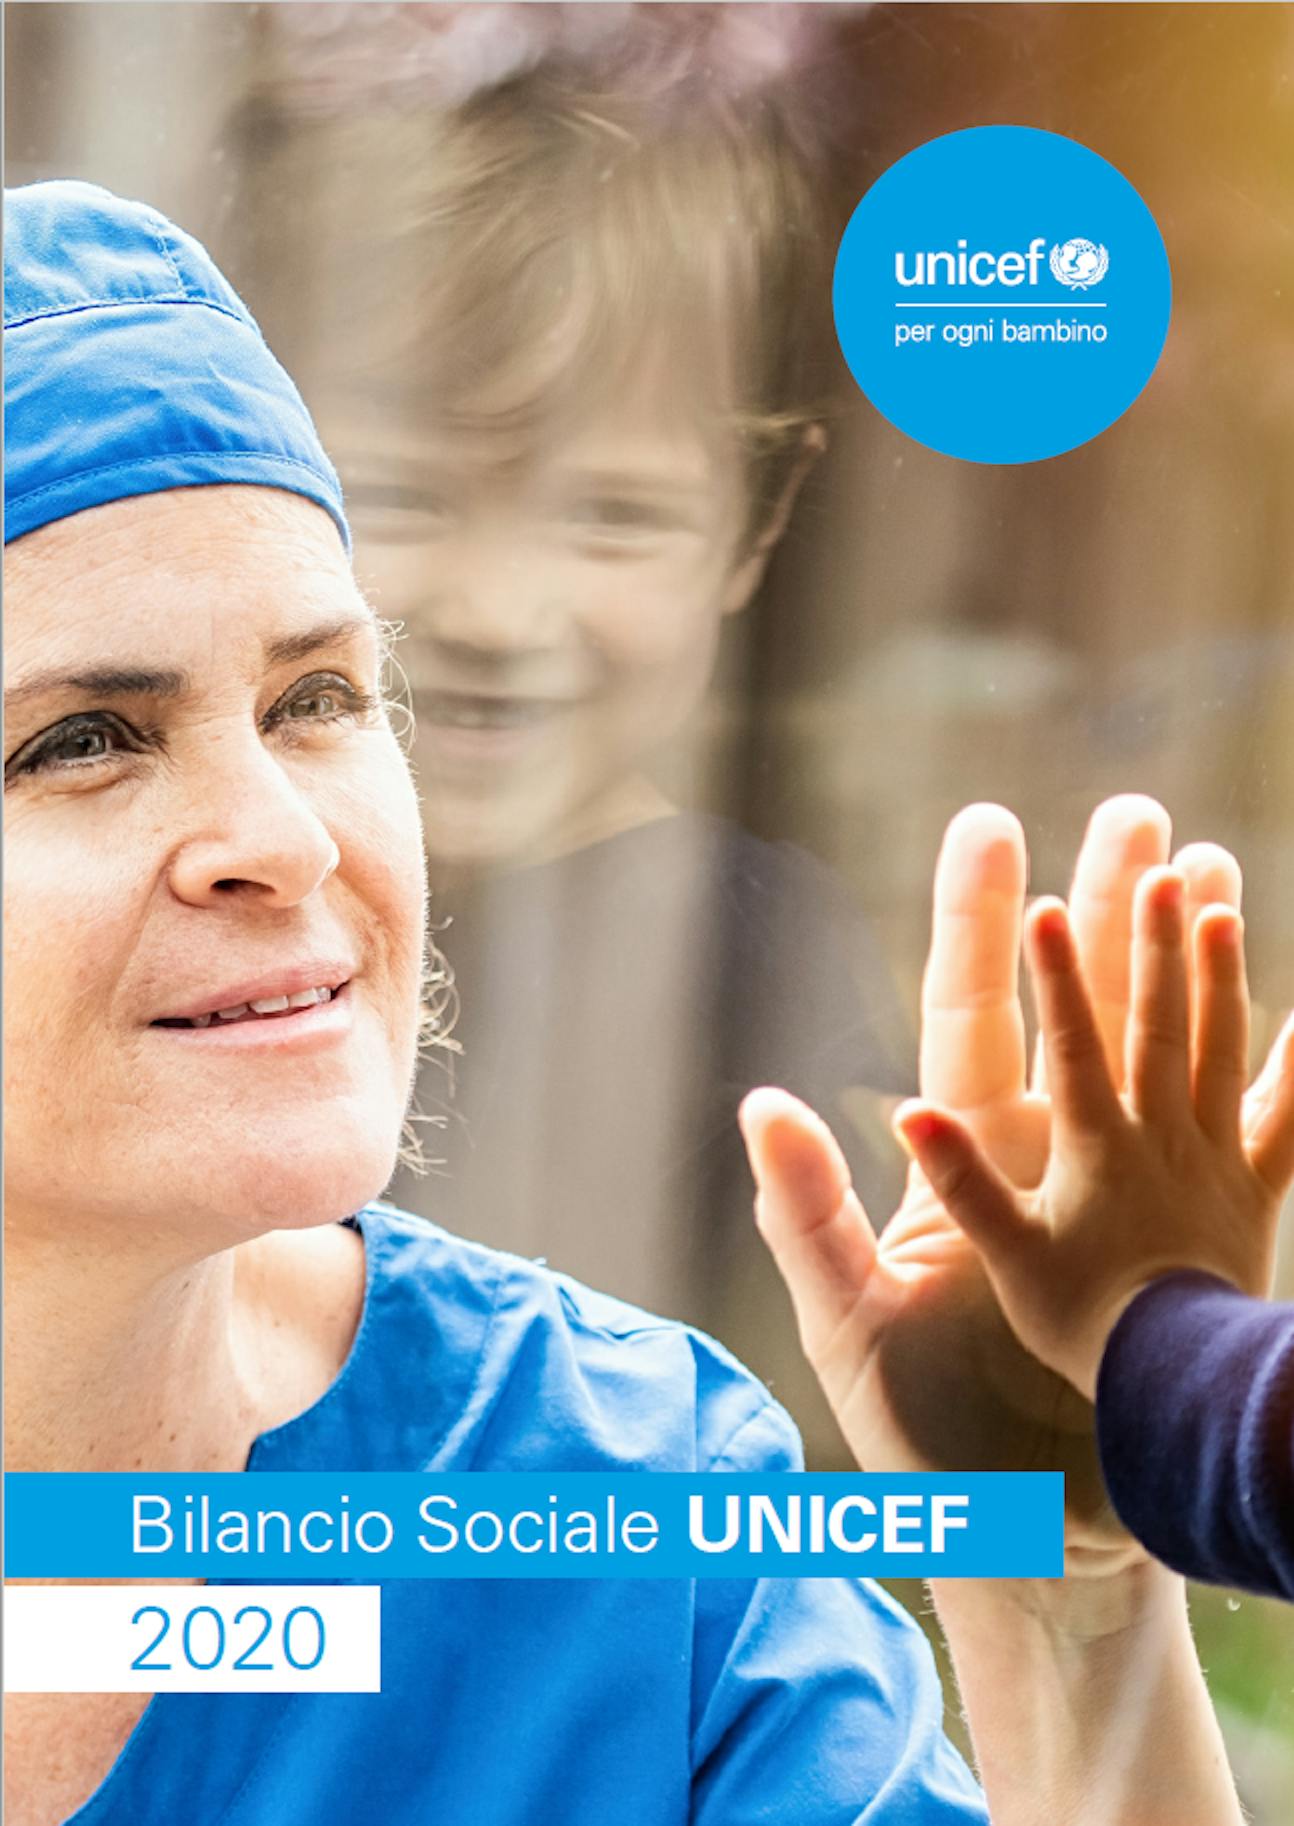 Bilancio sociale UNICEF 2020 